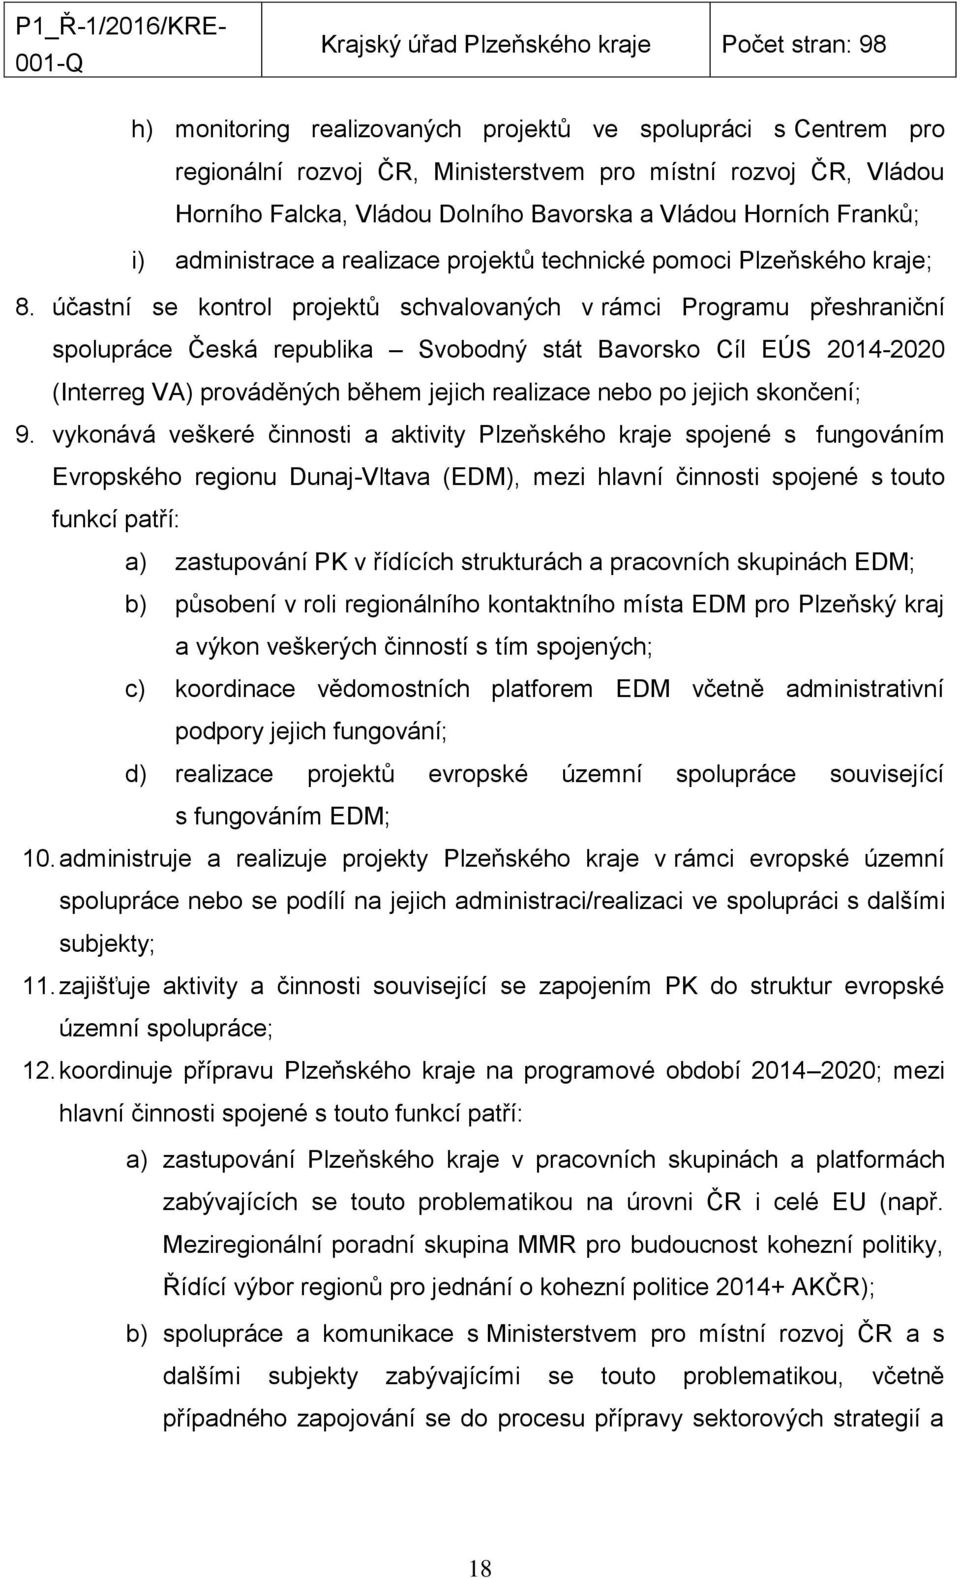 účastní se kontrol projektů schvalovaných v rámci Programu přeshraniční spolupráce Česká republika Svobodný stát Bavorsko Cíl EÚS 2014-2020 (Interreg VA) prováděných během jejich realizace nebo po